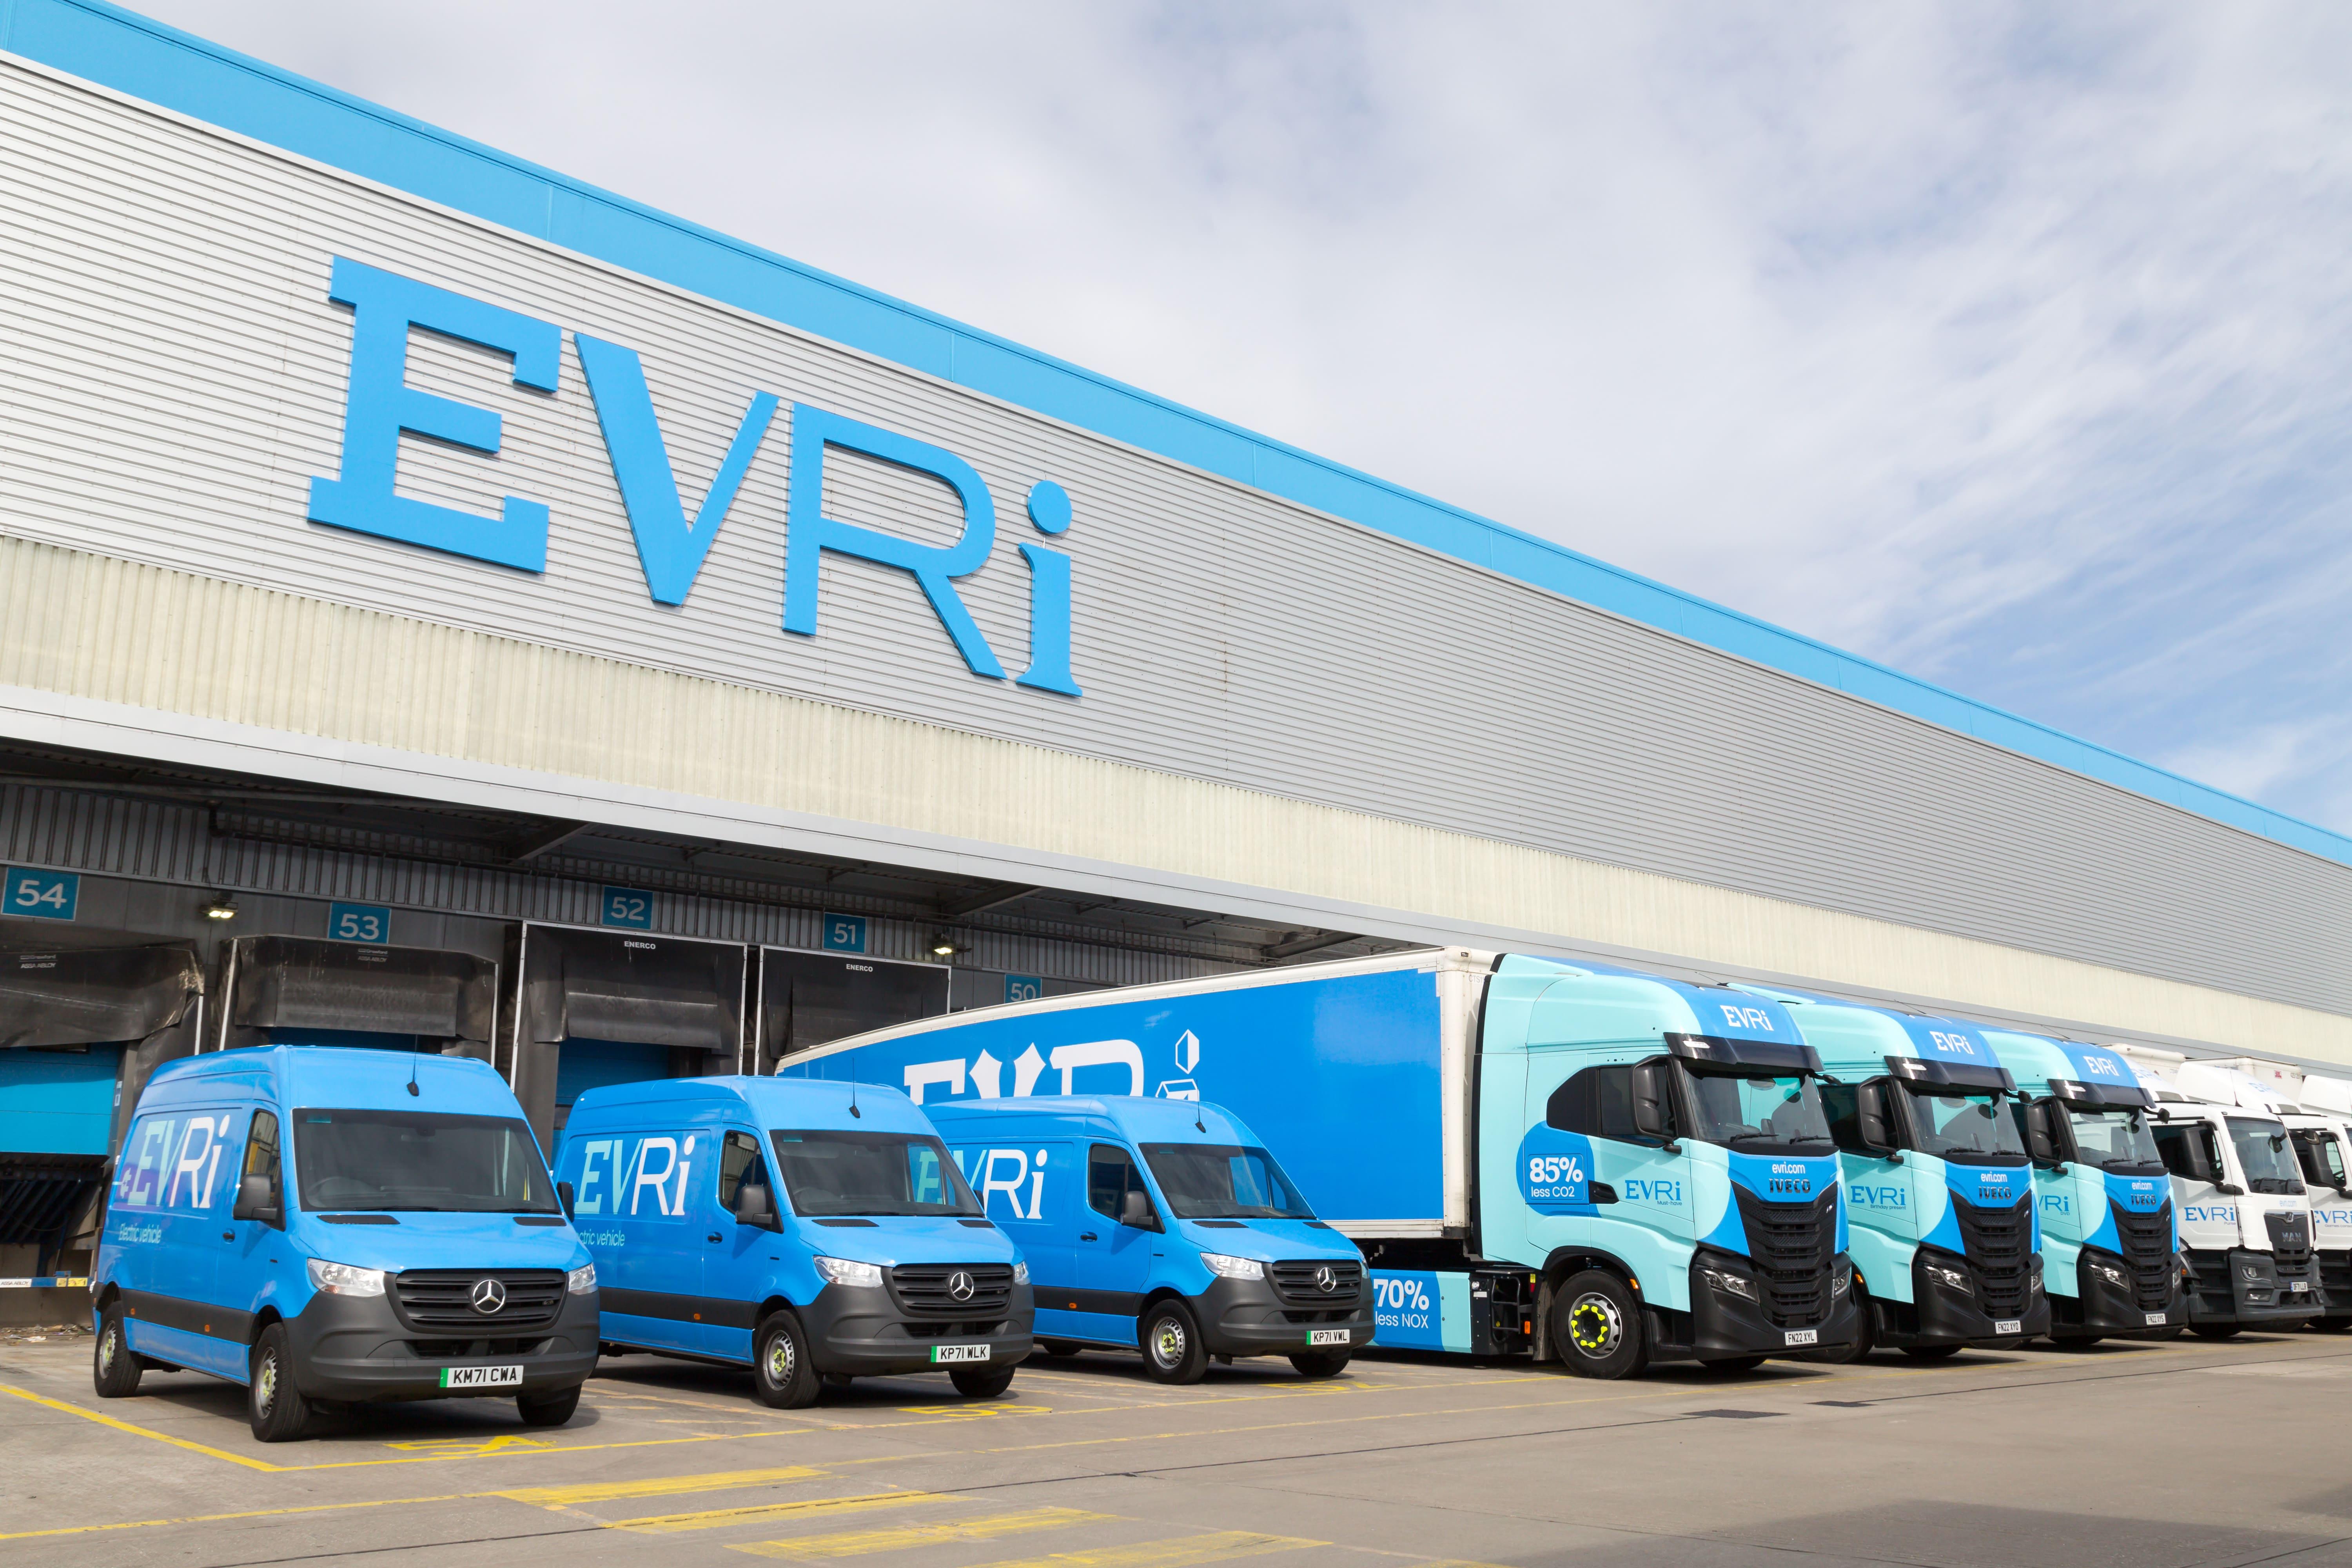 Evri trucks Hubs min